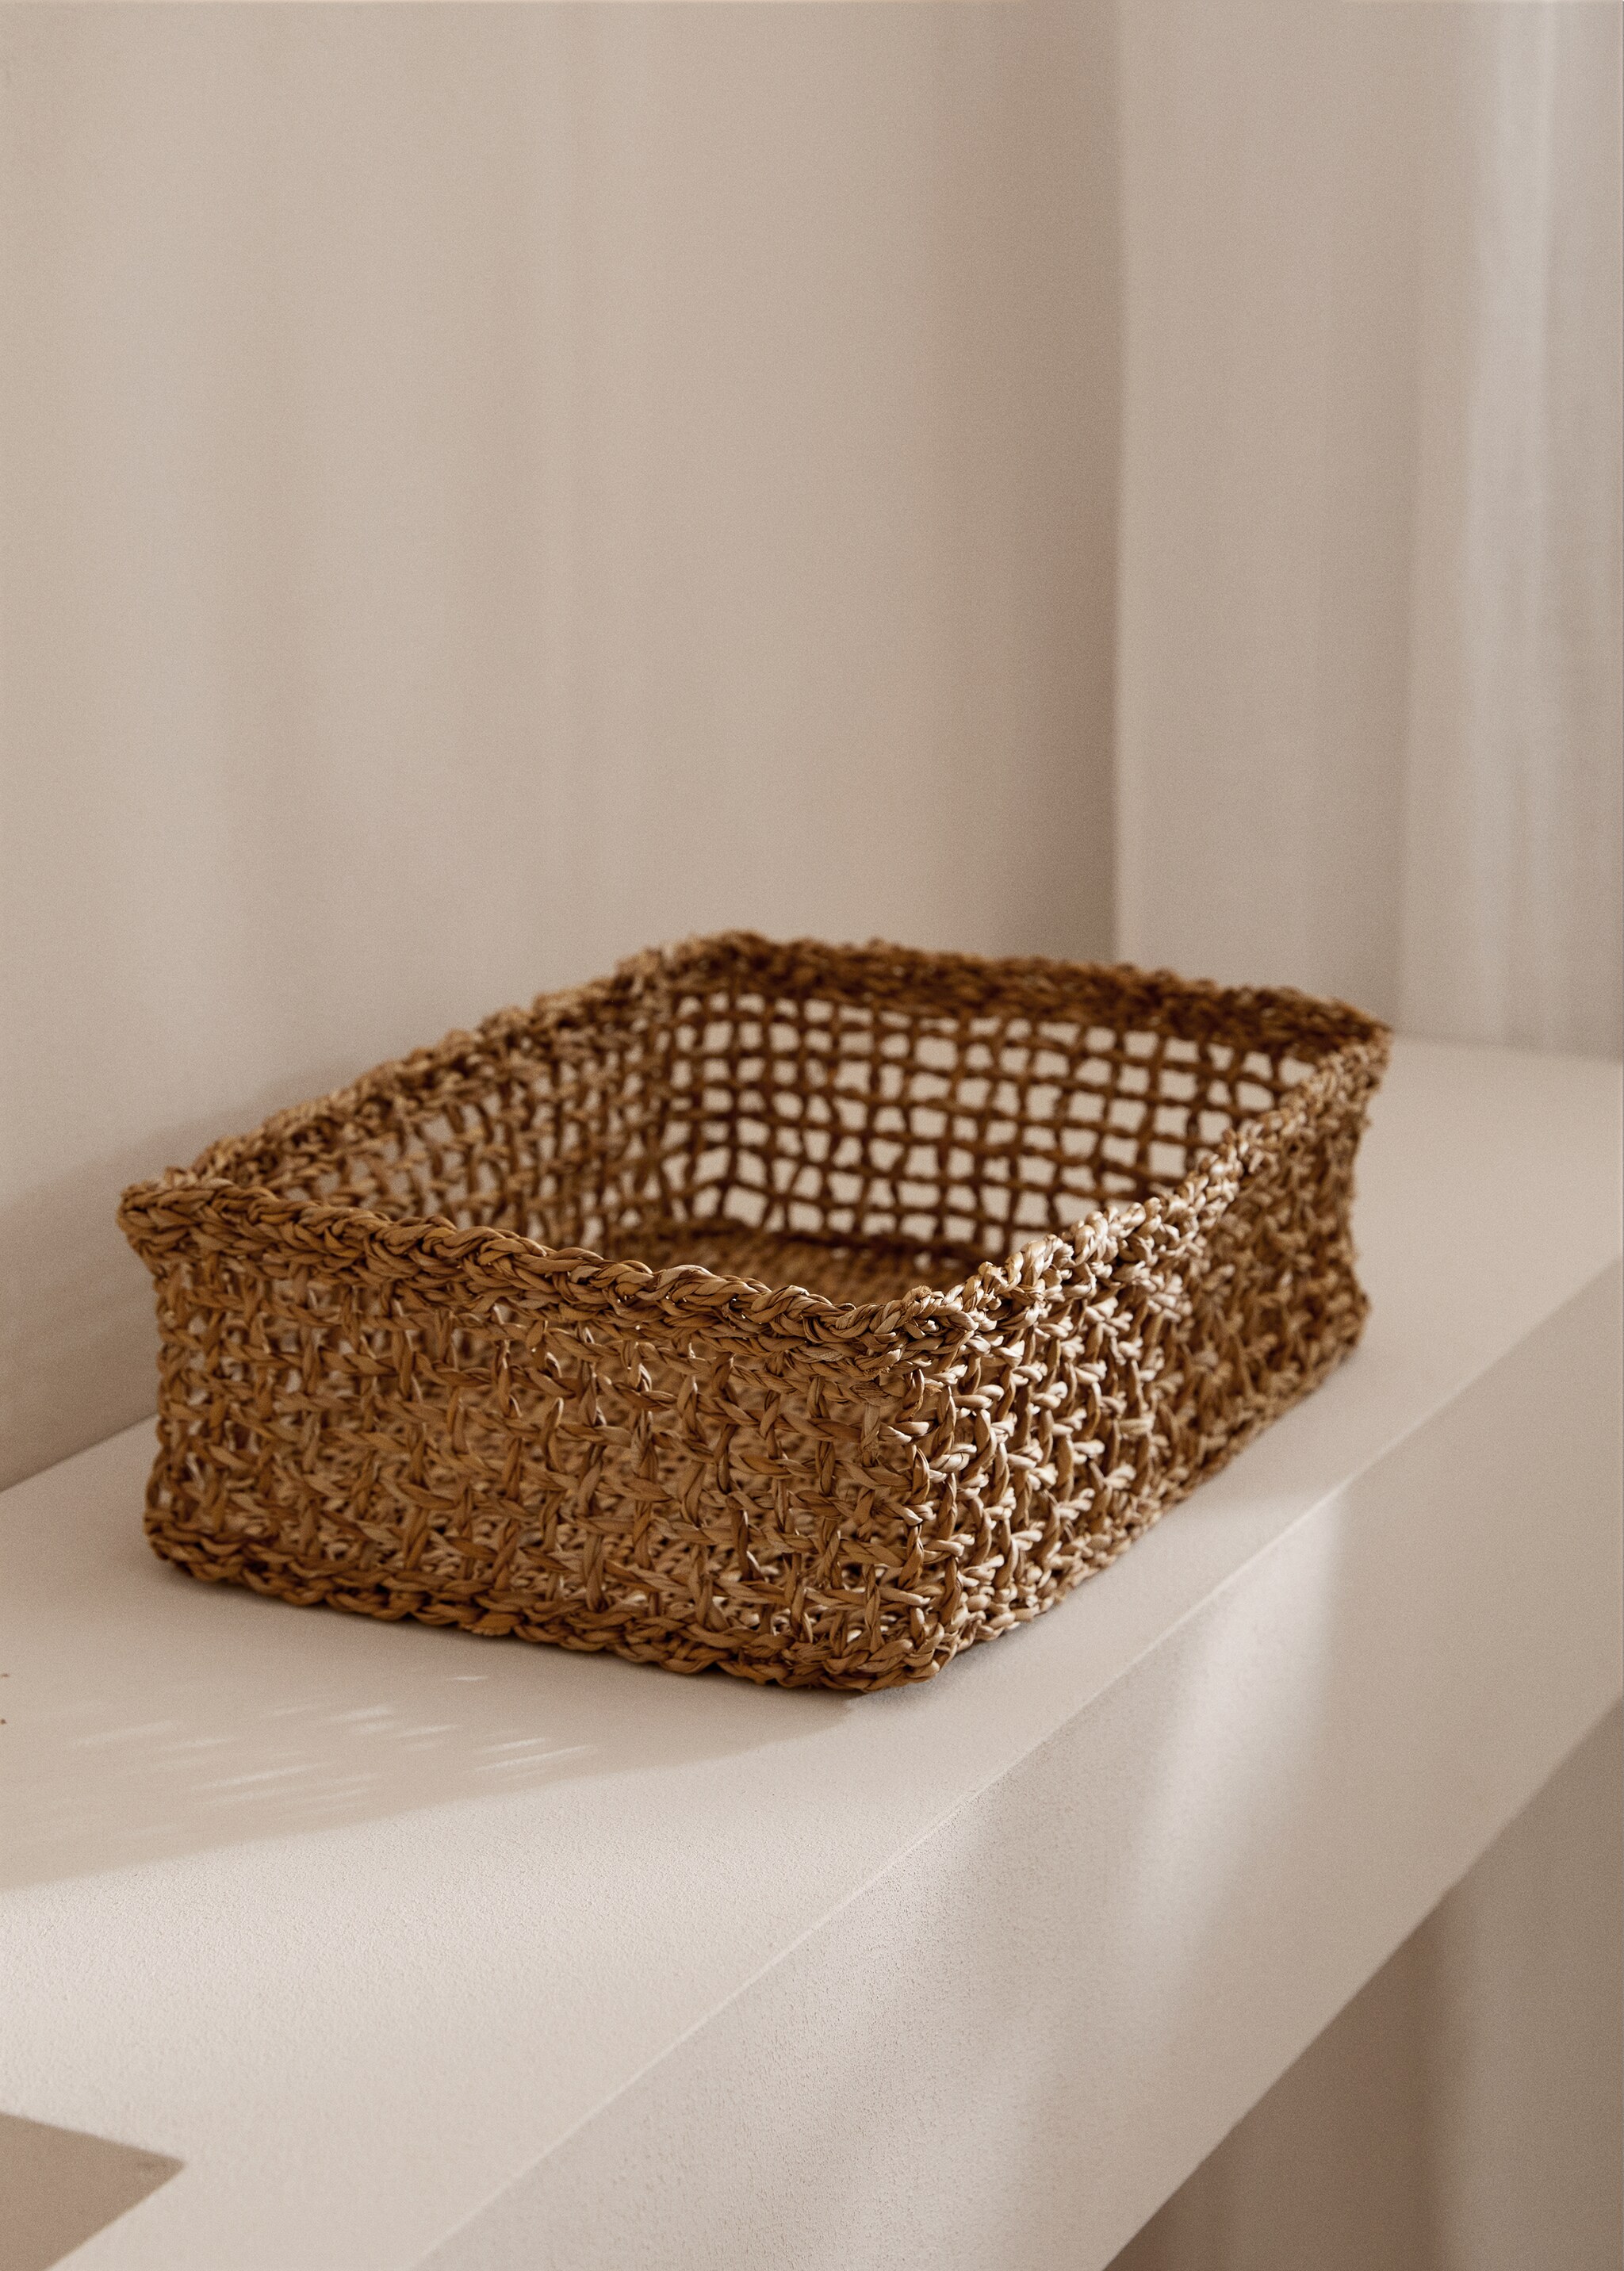 Rectangular basket natural fibers 25x35cm - General plane